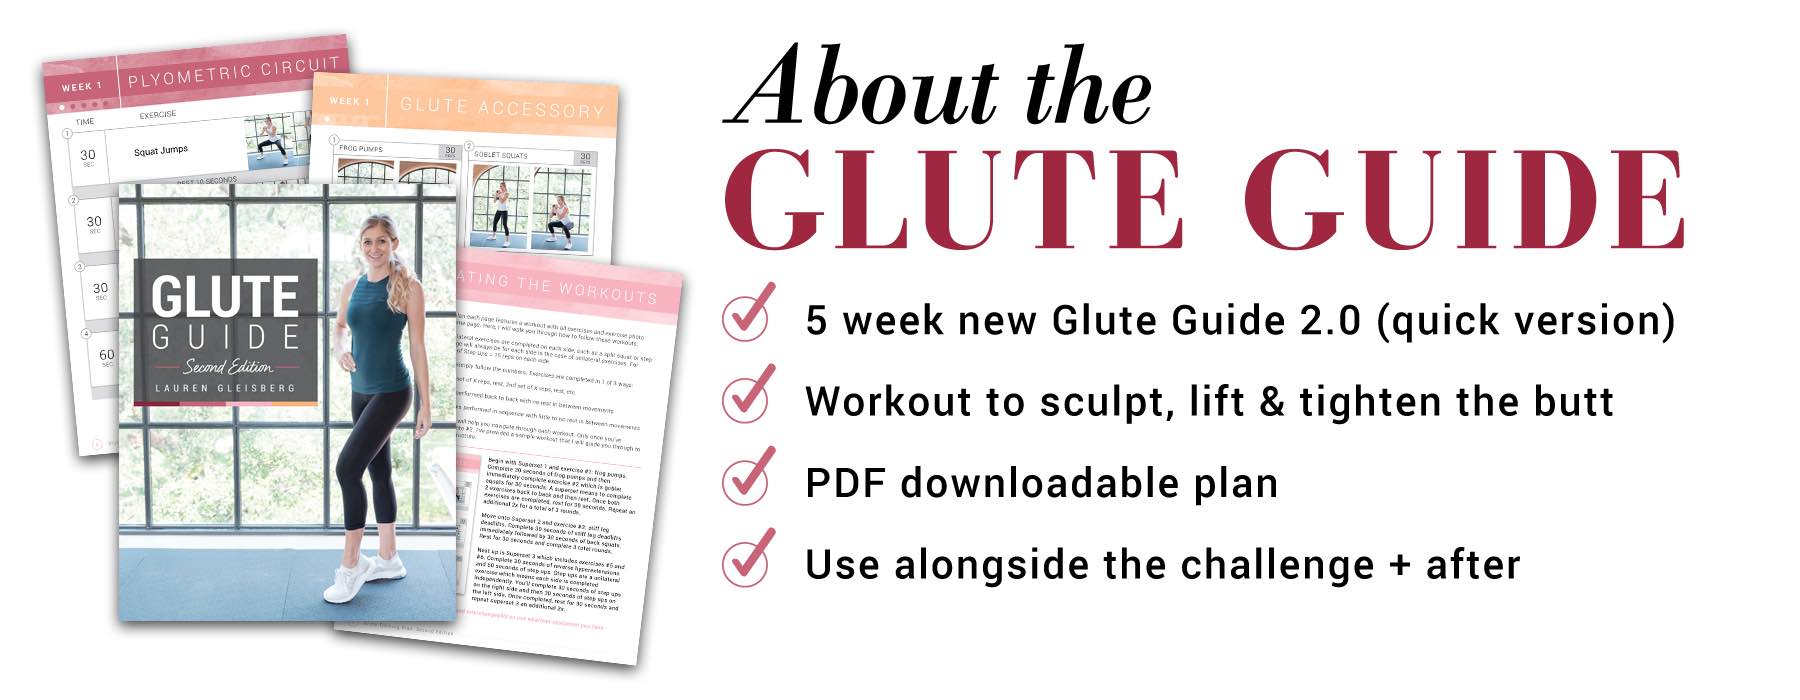 lauren gleisberg's glute guide